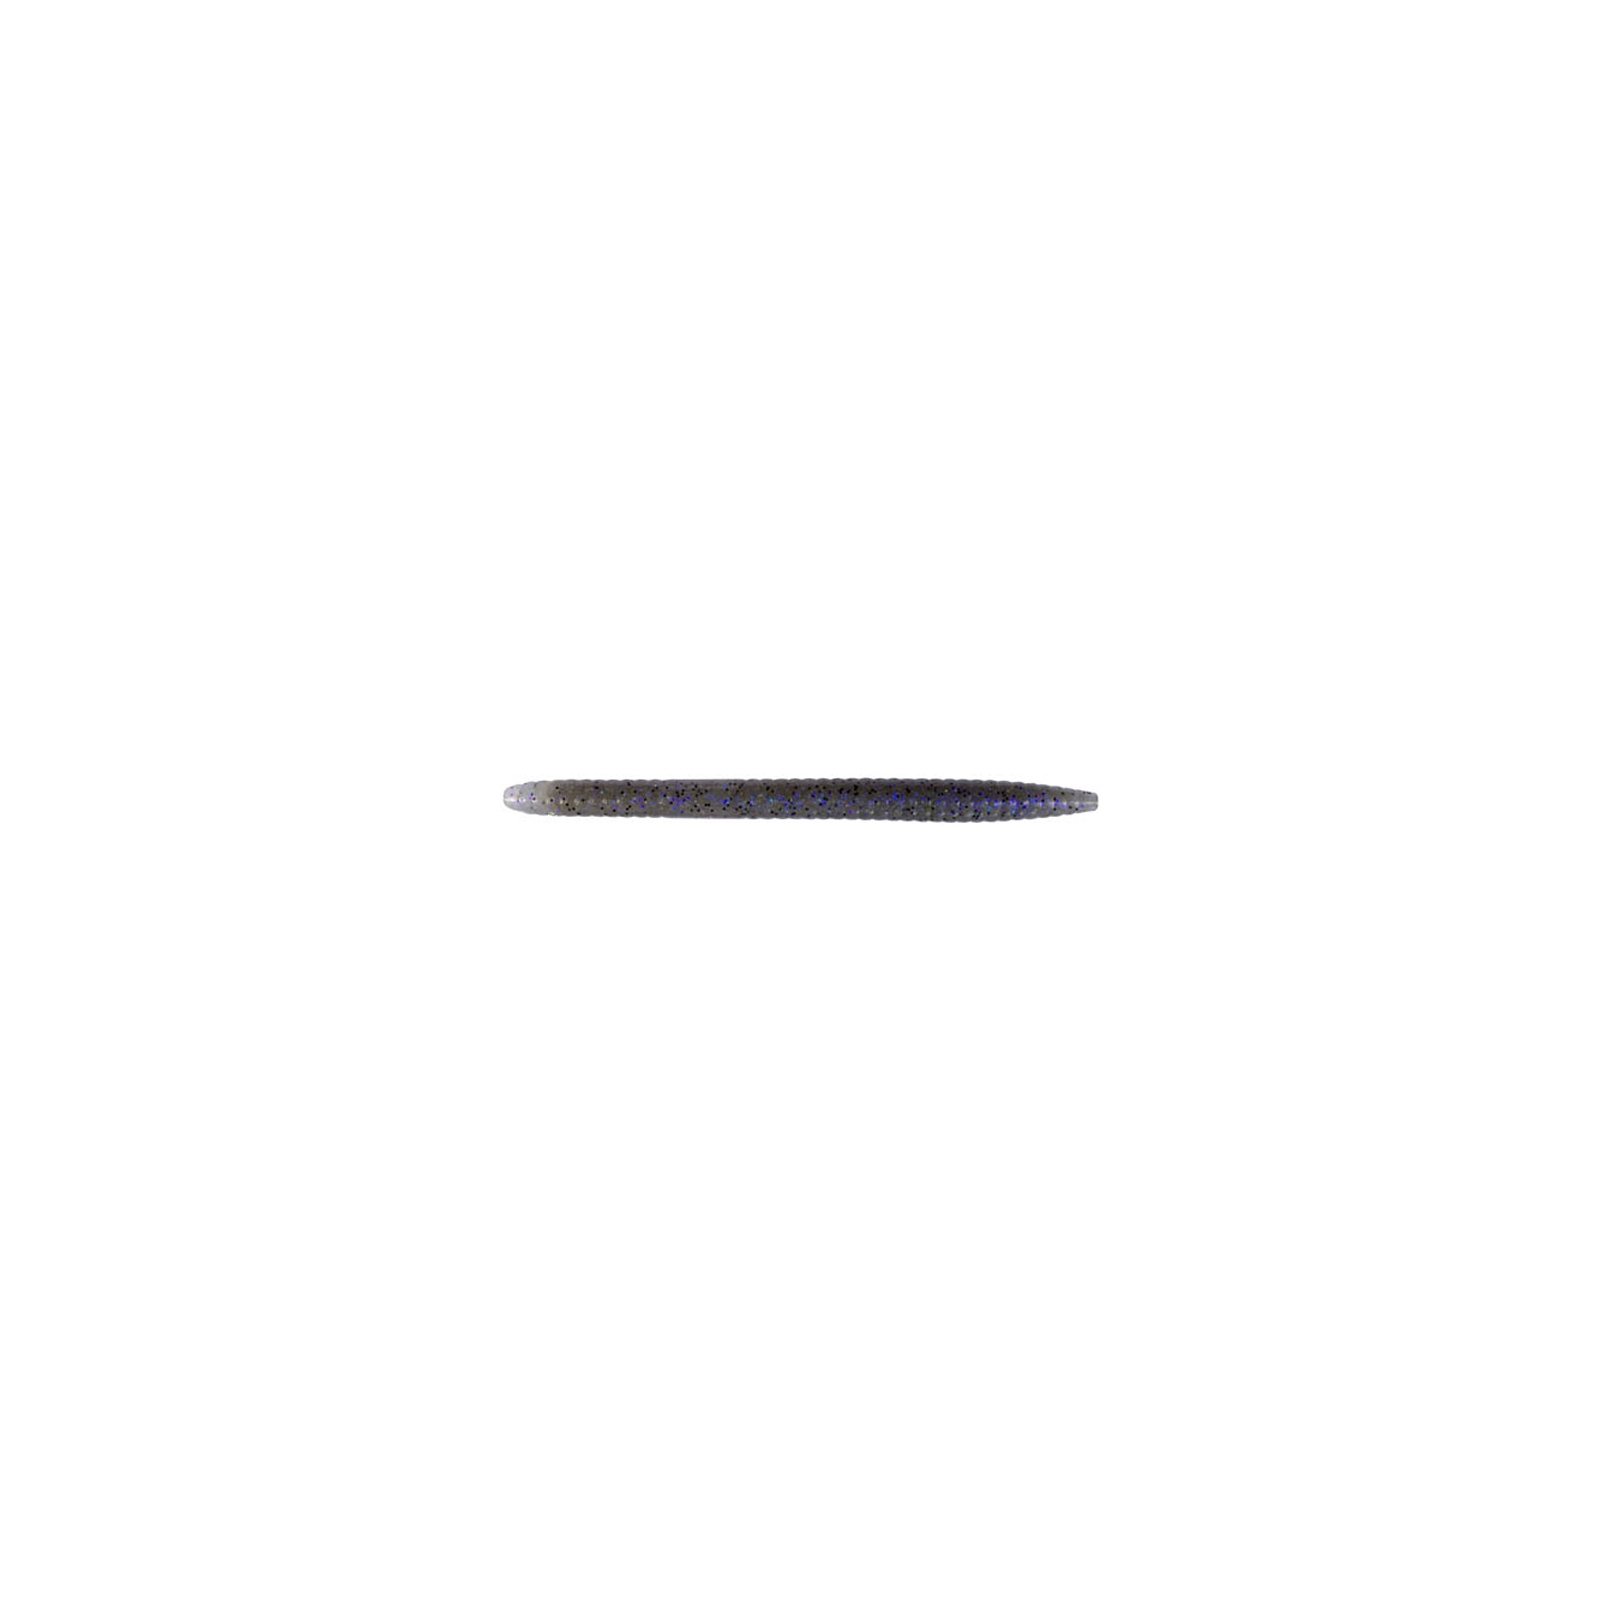 Силикон рыболовный Keitech Salty Core Stick 5.5" 440 Electric Shad (1551.03.80)